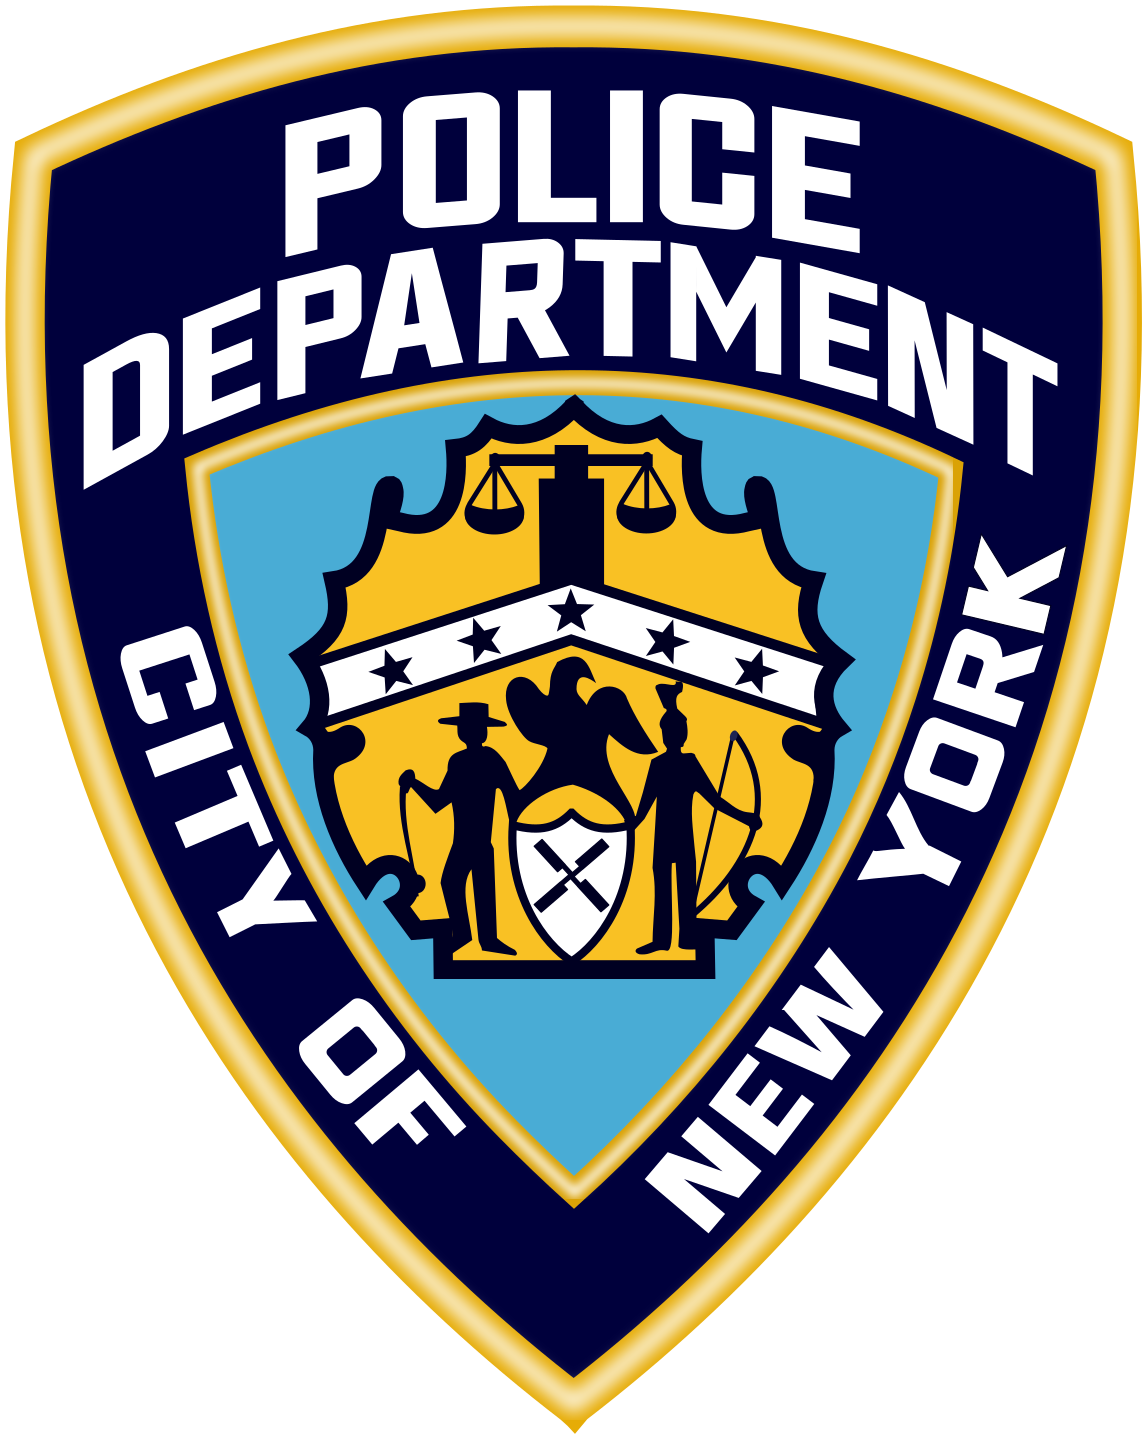 Police Arrests Nigeria - Police De New York (1200x1482)